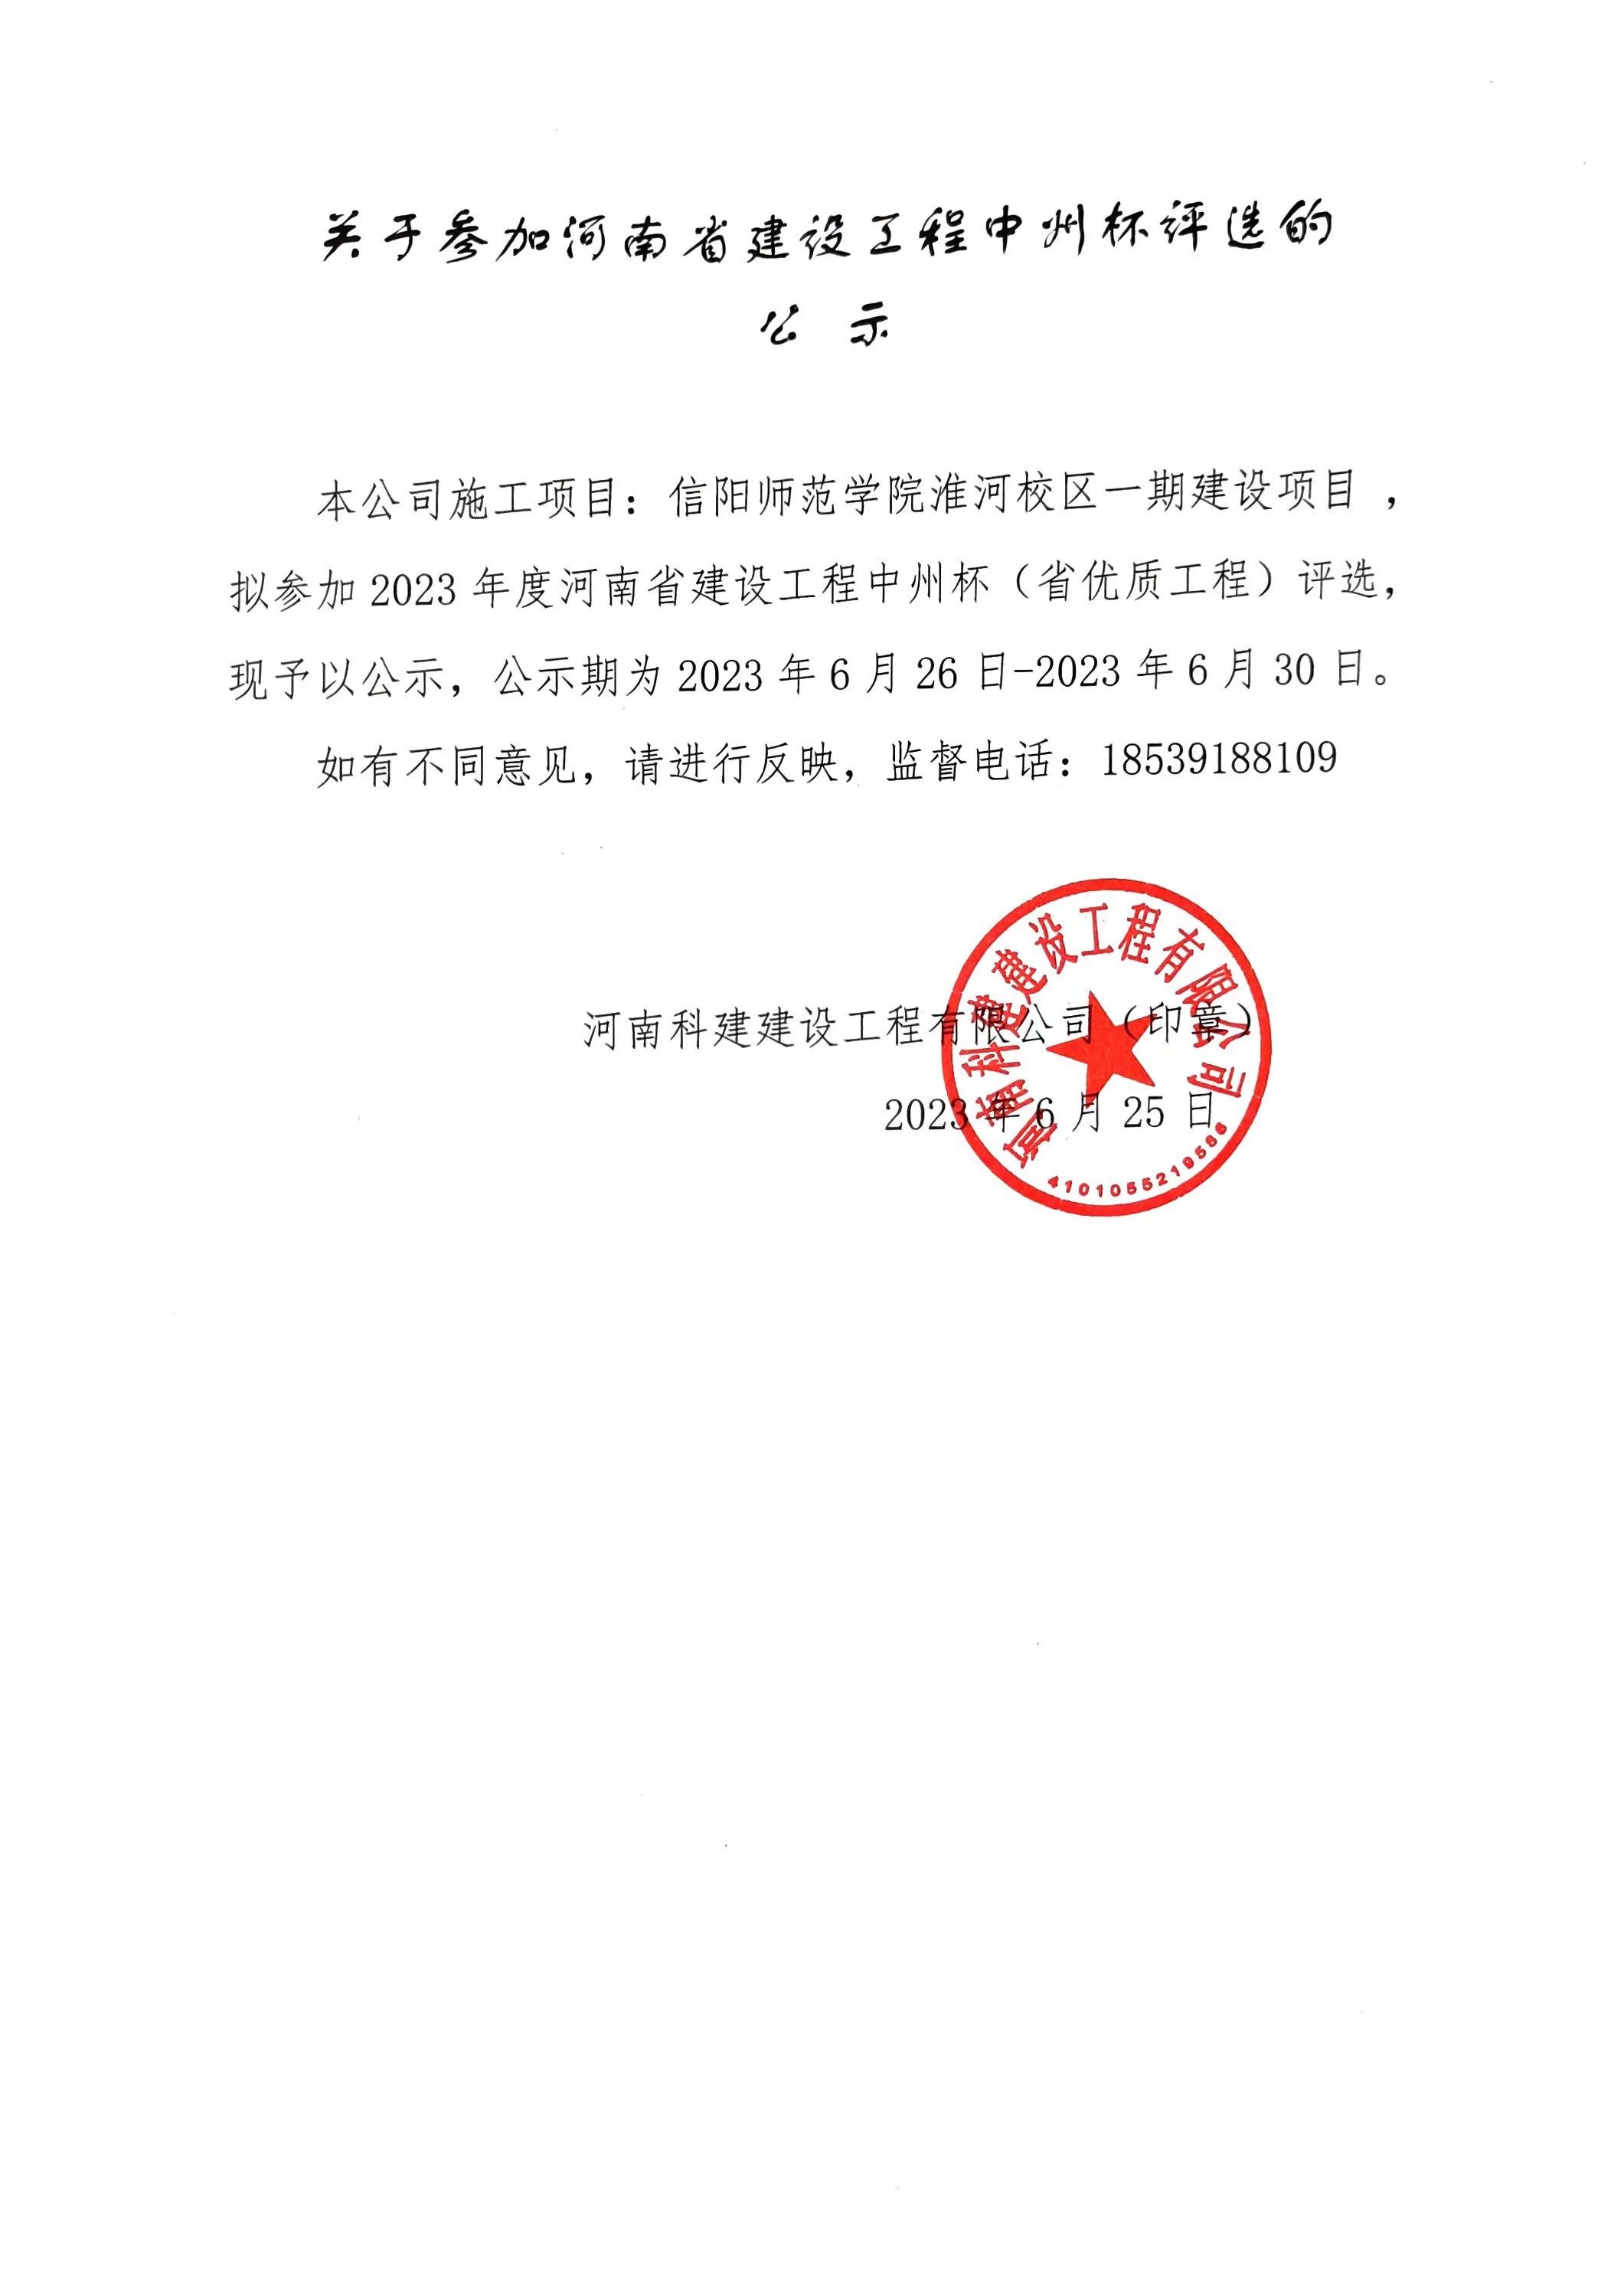 關于參加河南省建設工程中州杯評選的公示